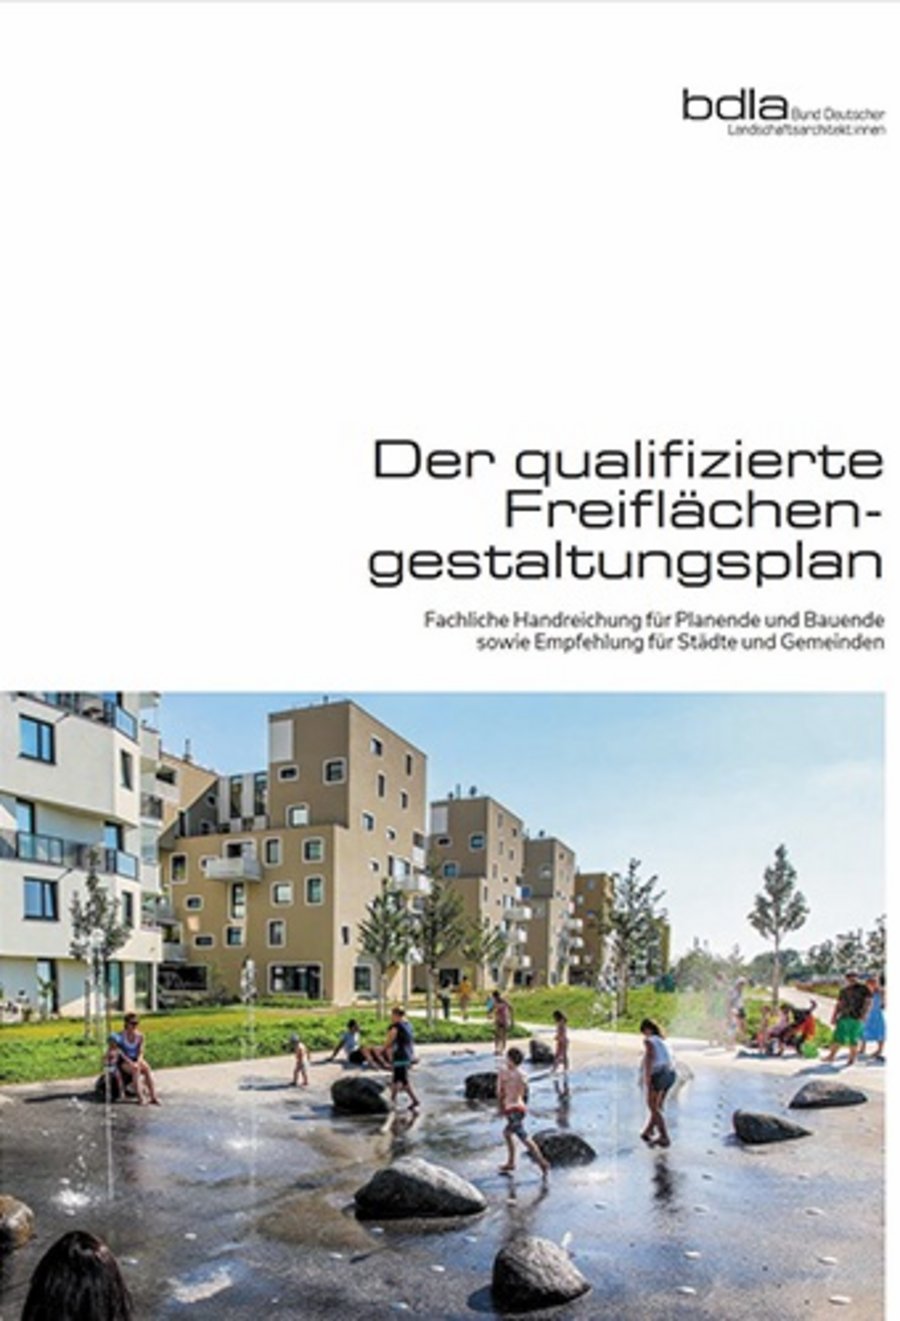 Bücher Bund Deutscher Landschaftsarchitekt:innen (BDLA)